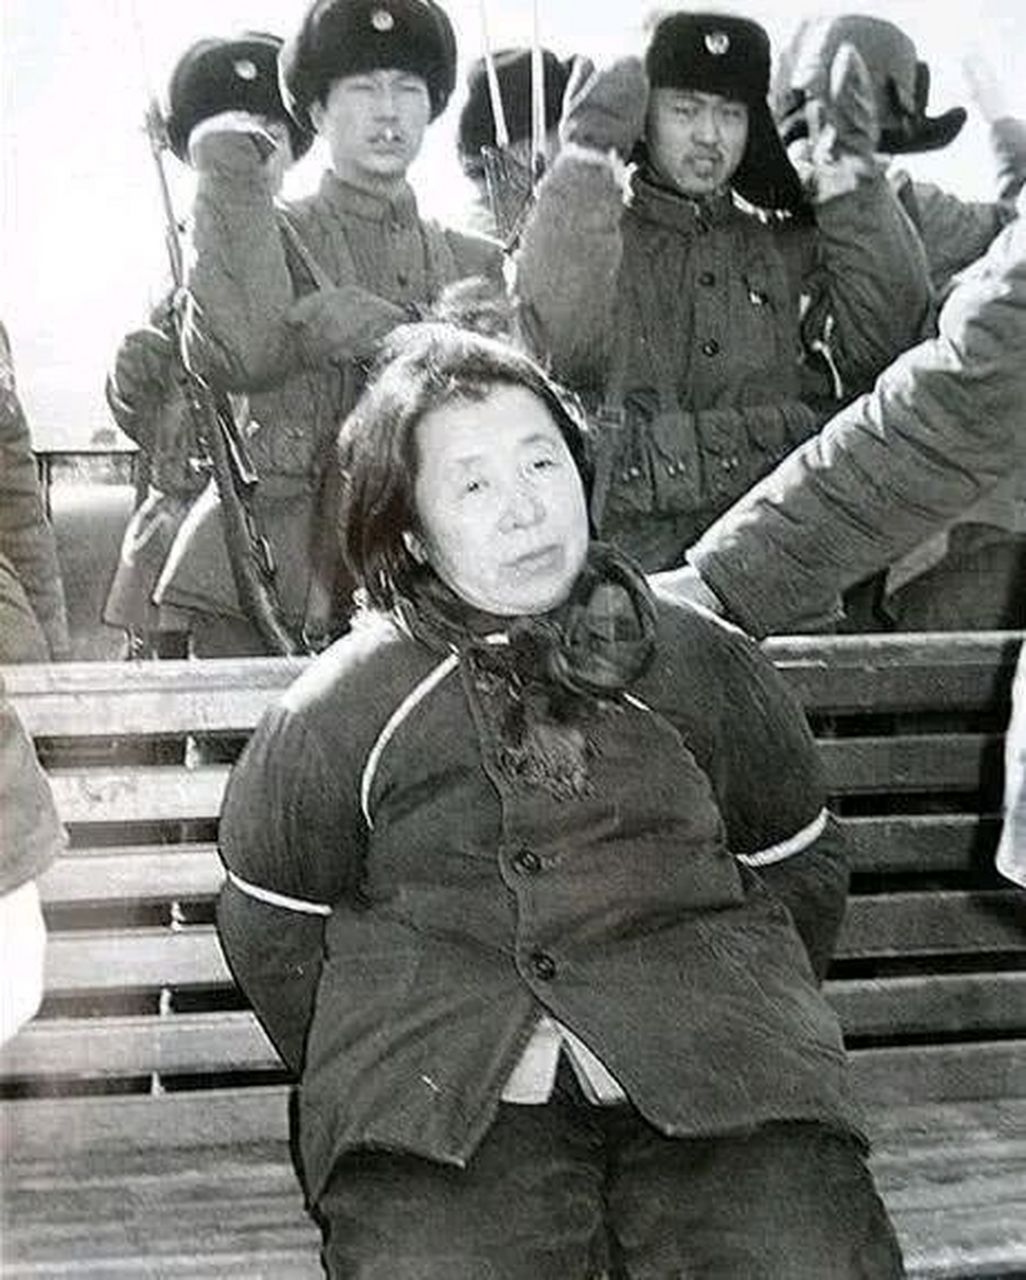 这是1980年哈尔滨郊外刑场,拍下的一张照片,镜头中这个坐在长凳上,被